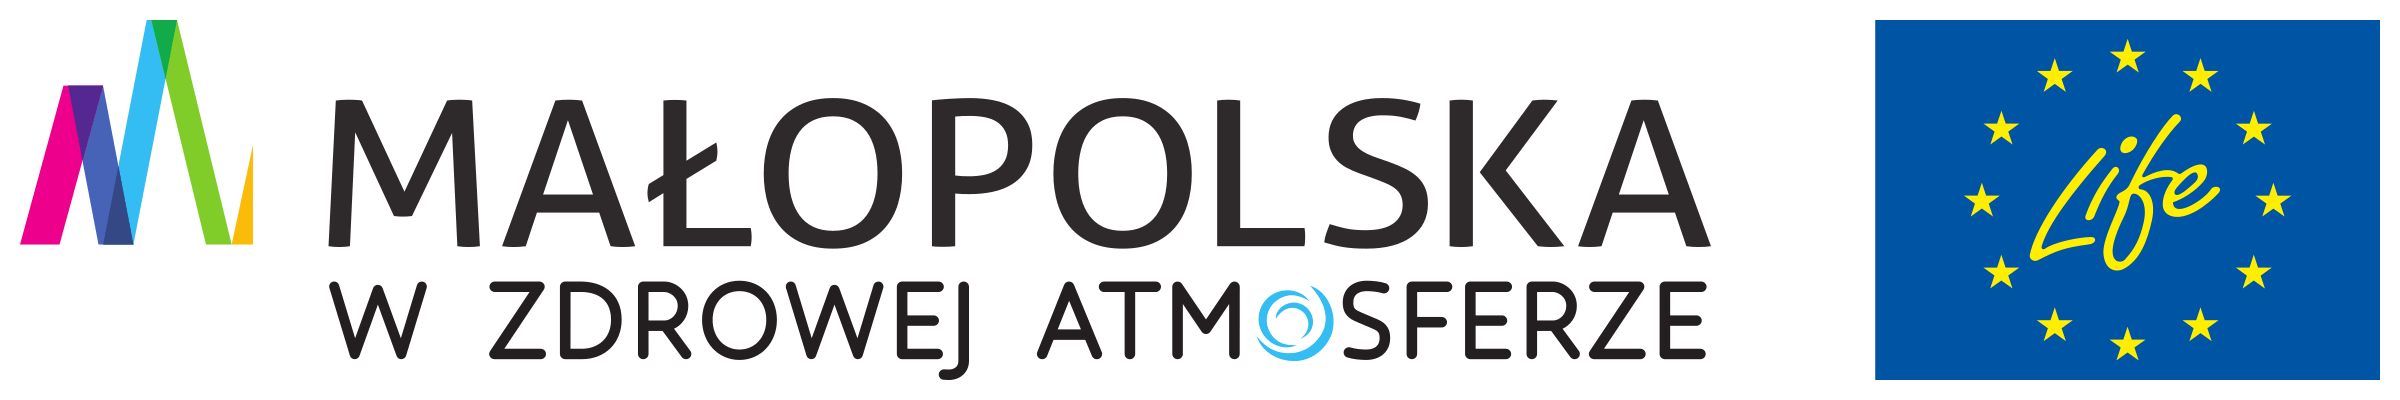 logo: małopolska, life